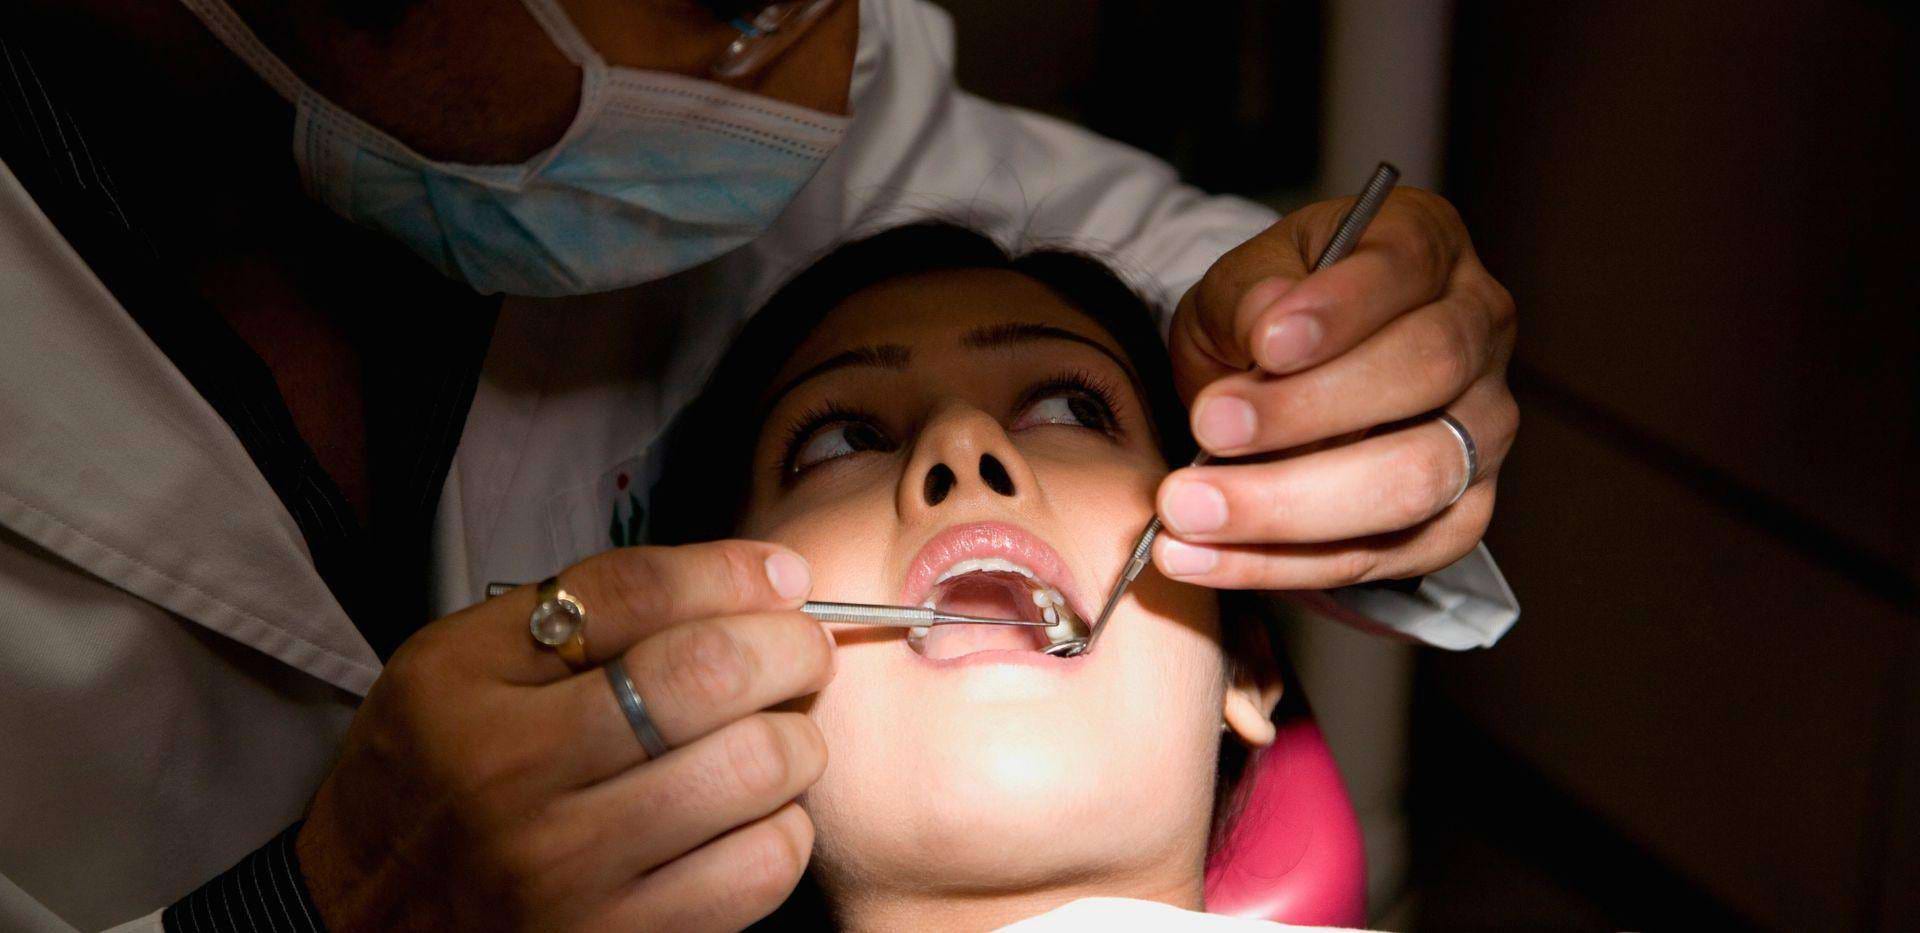 Pacientka podstupující dentální ošetření u zubaře.